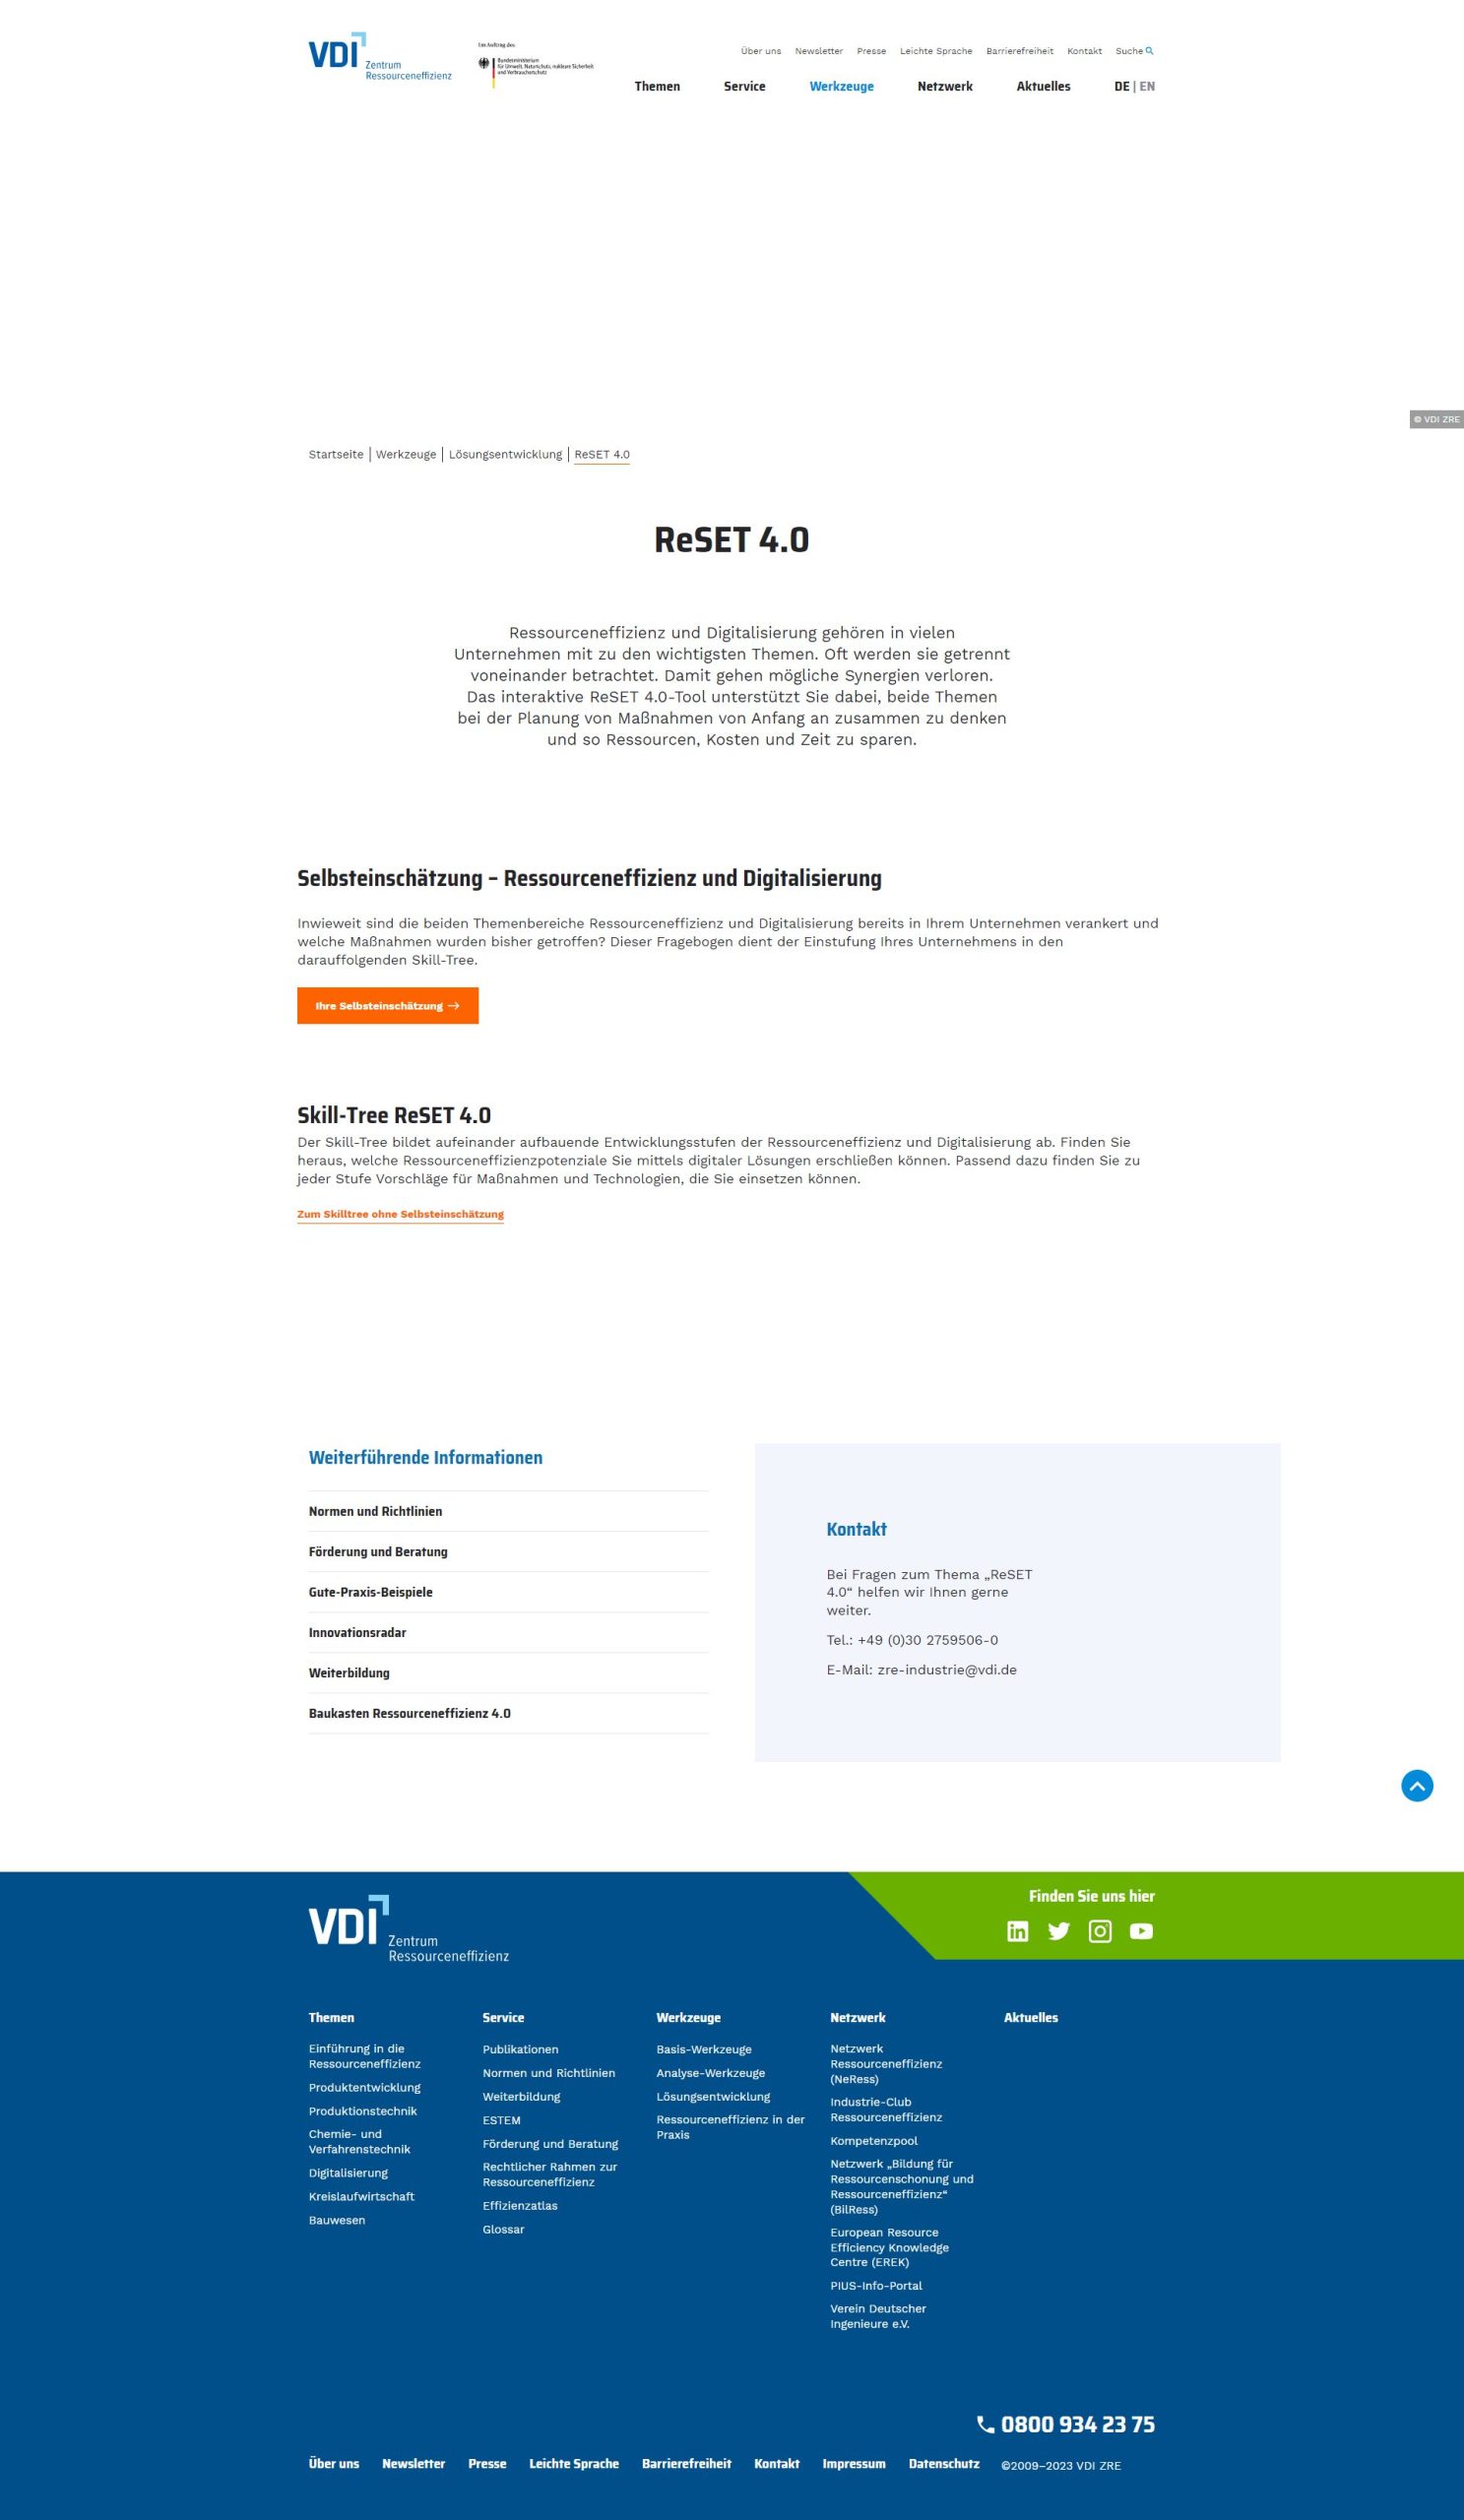 VDI: Analyse-Tool für mehr Ressourceneffizienz